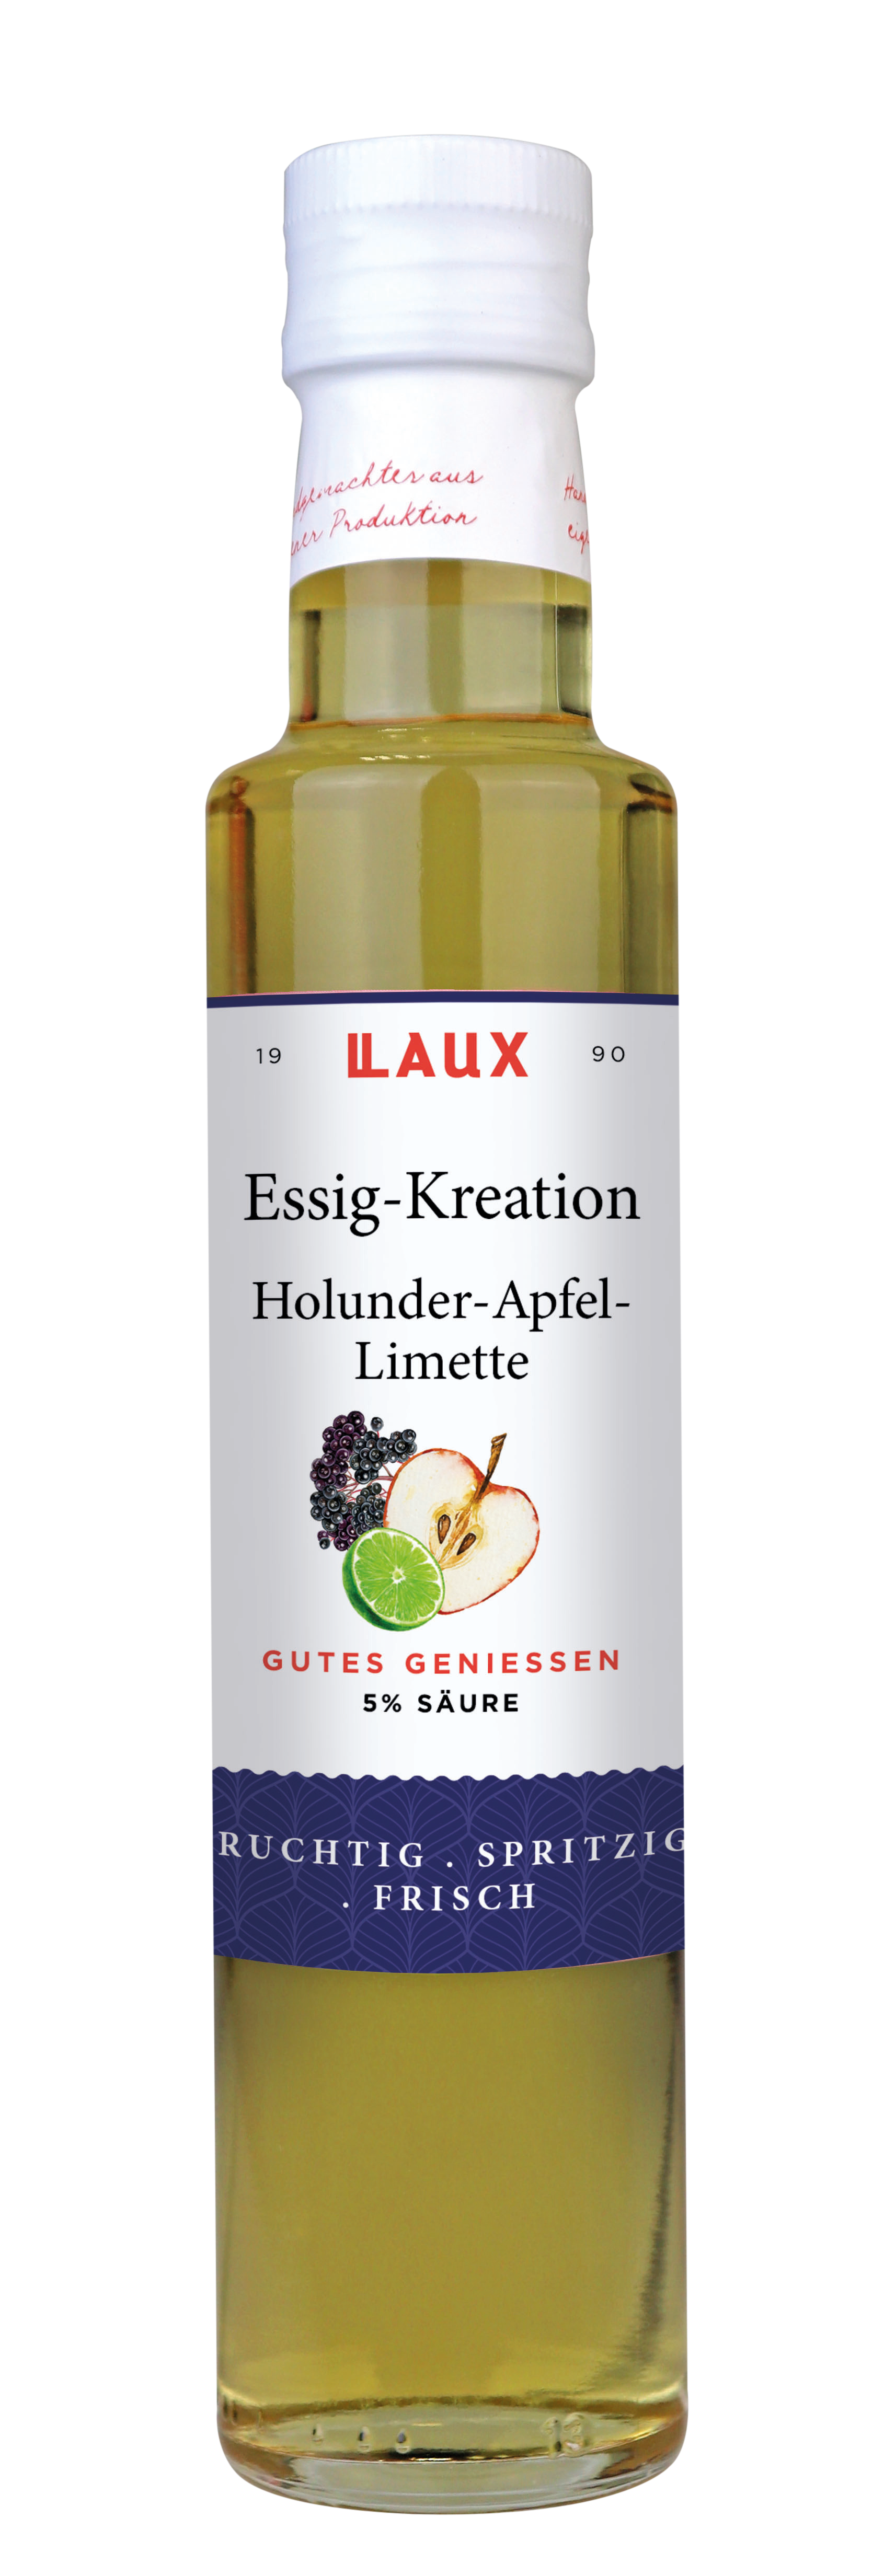 Essig Kreation Holunder-Apfel-Limette 5 % Säure - 250ml Flasche